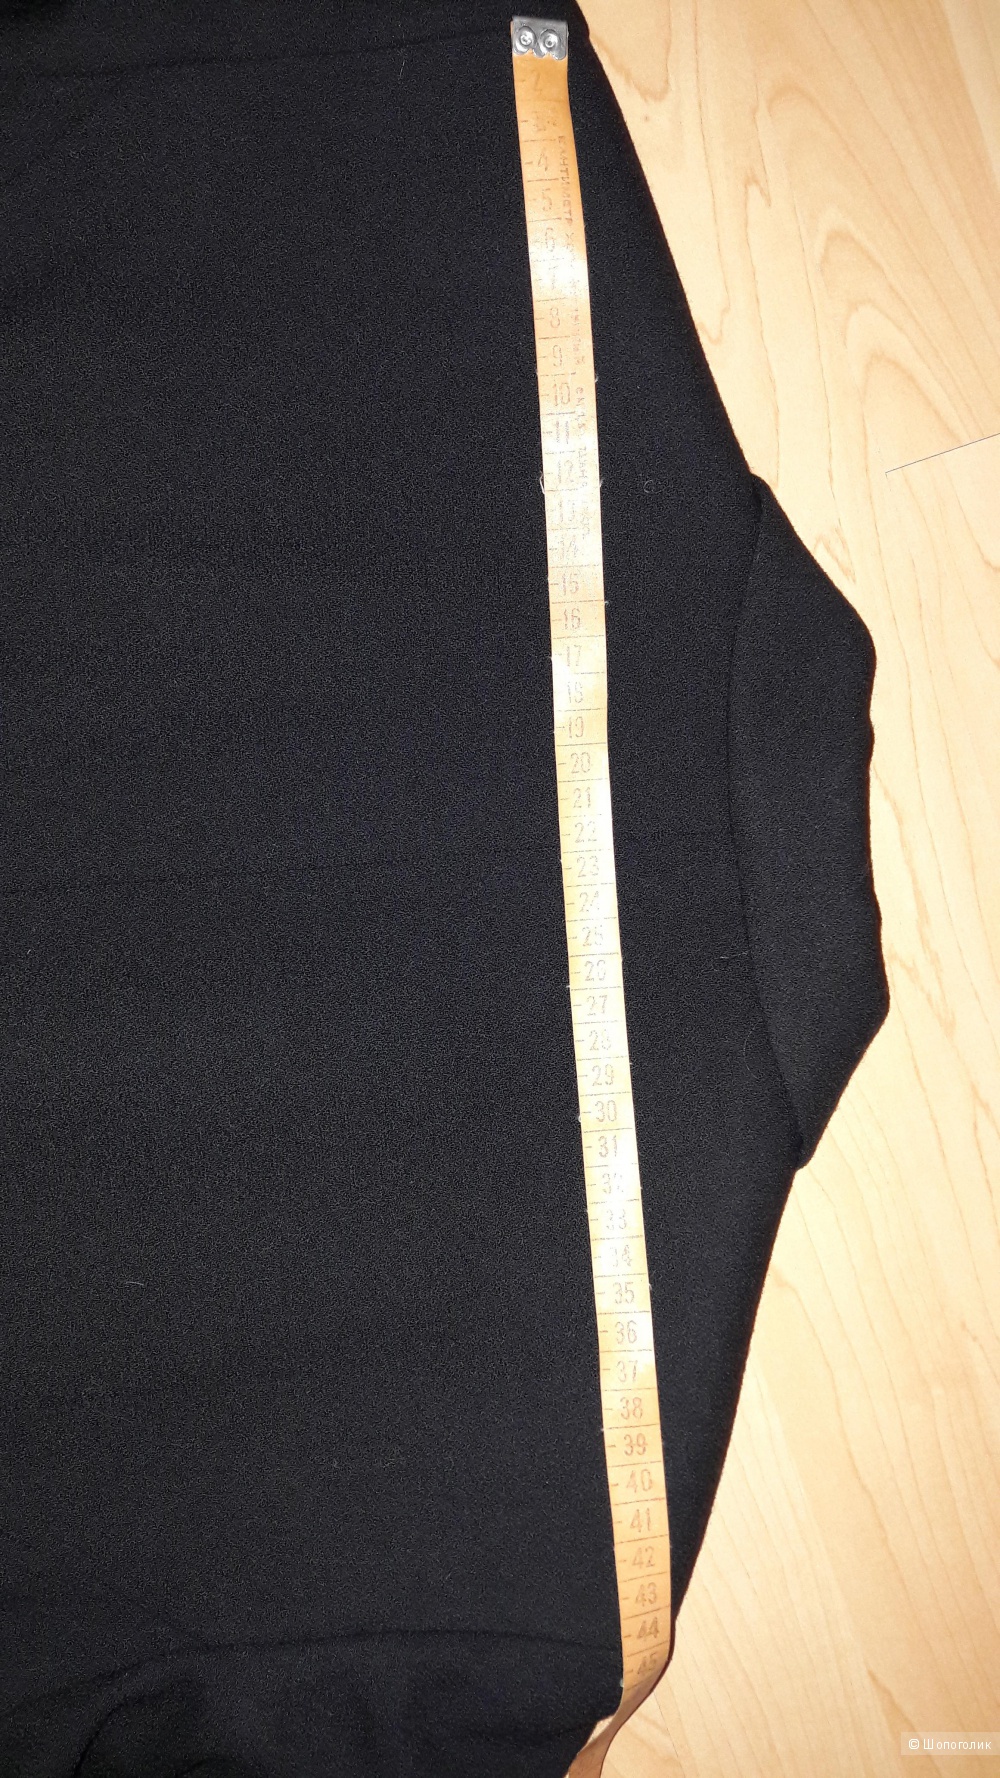 Пиджак - смокинг американского дизайнера RINA ROSSI, амр.размер 12, на наш 46-48 (новый), 100 % шерсть